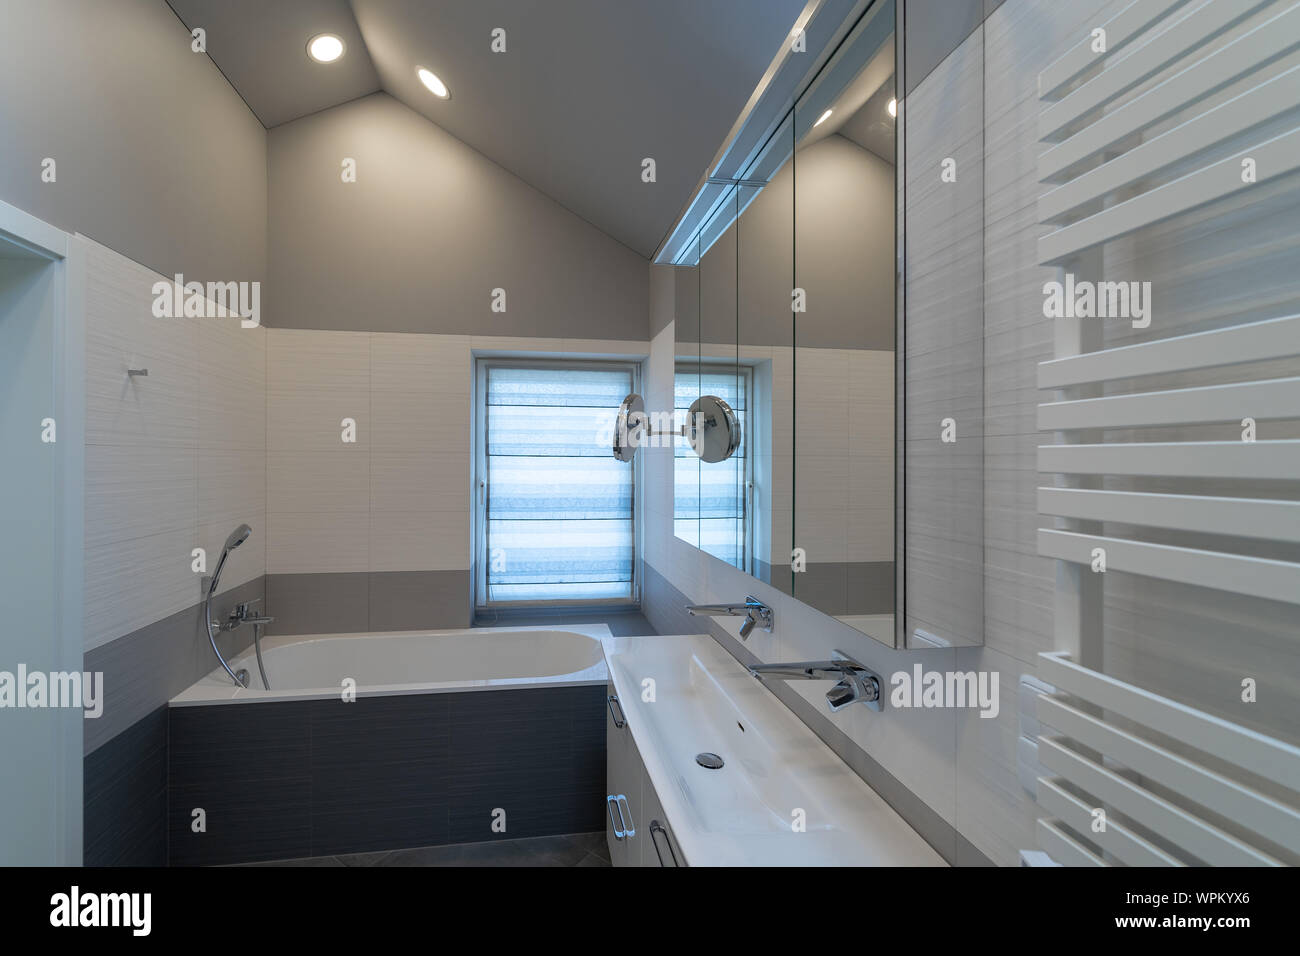 Das Innere eines modernen Bad mit Fenster in ein eigenes Haus. Badewanne, Schränke mit Spiegel und Waschbecken mit zwei Hähne Stockfoto